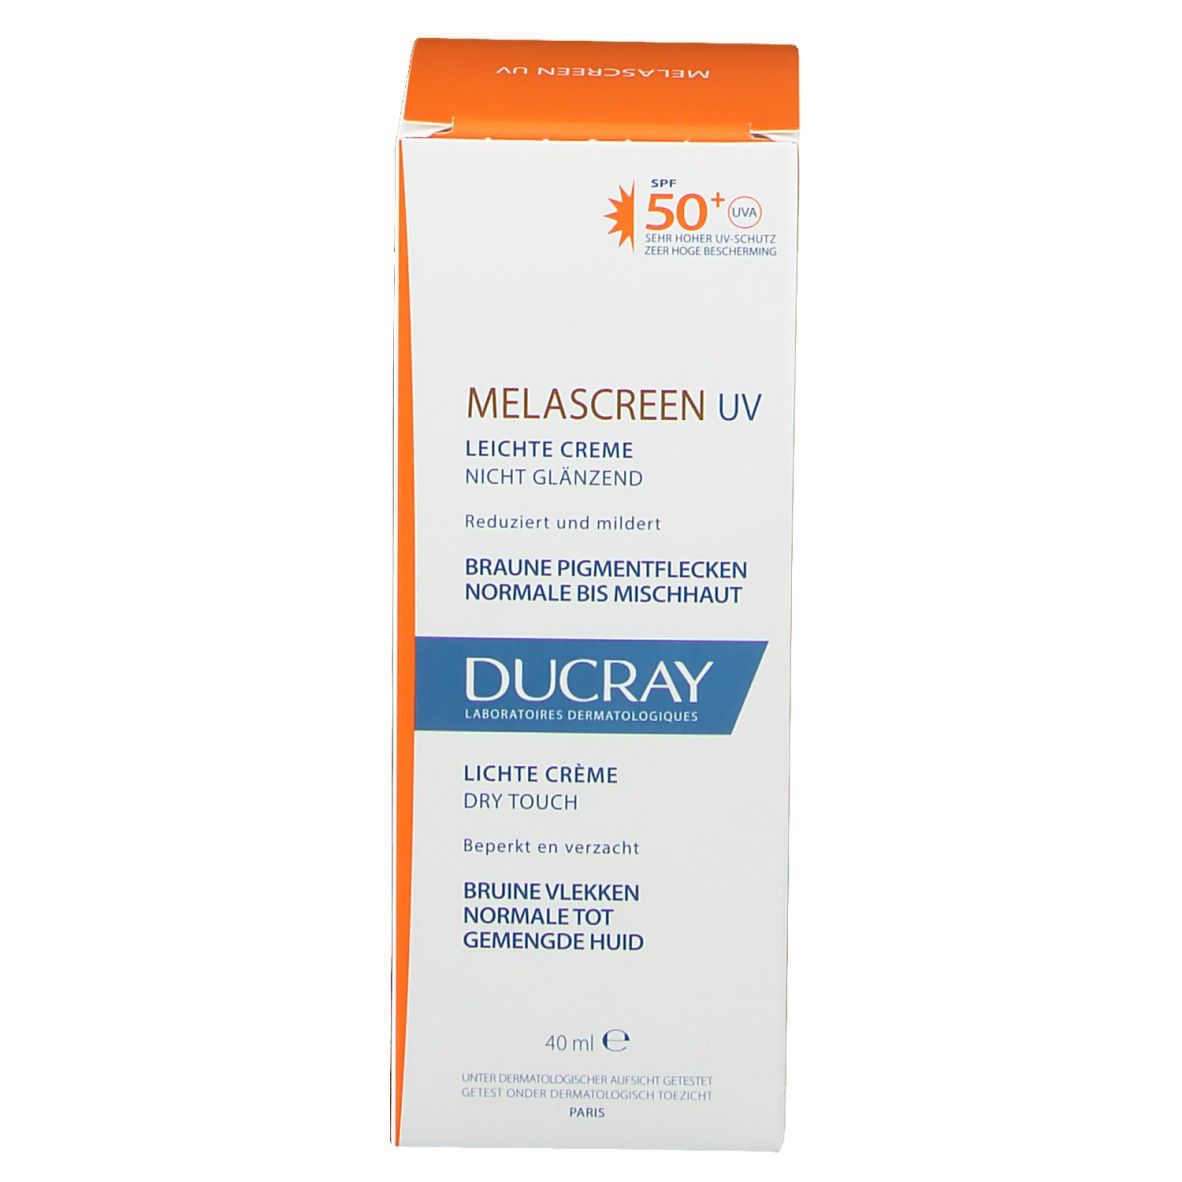 DUCRAY Melascreen UV Crema Leggera SPF 50+